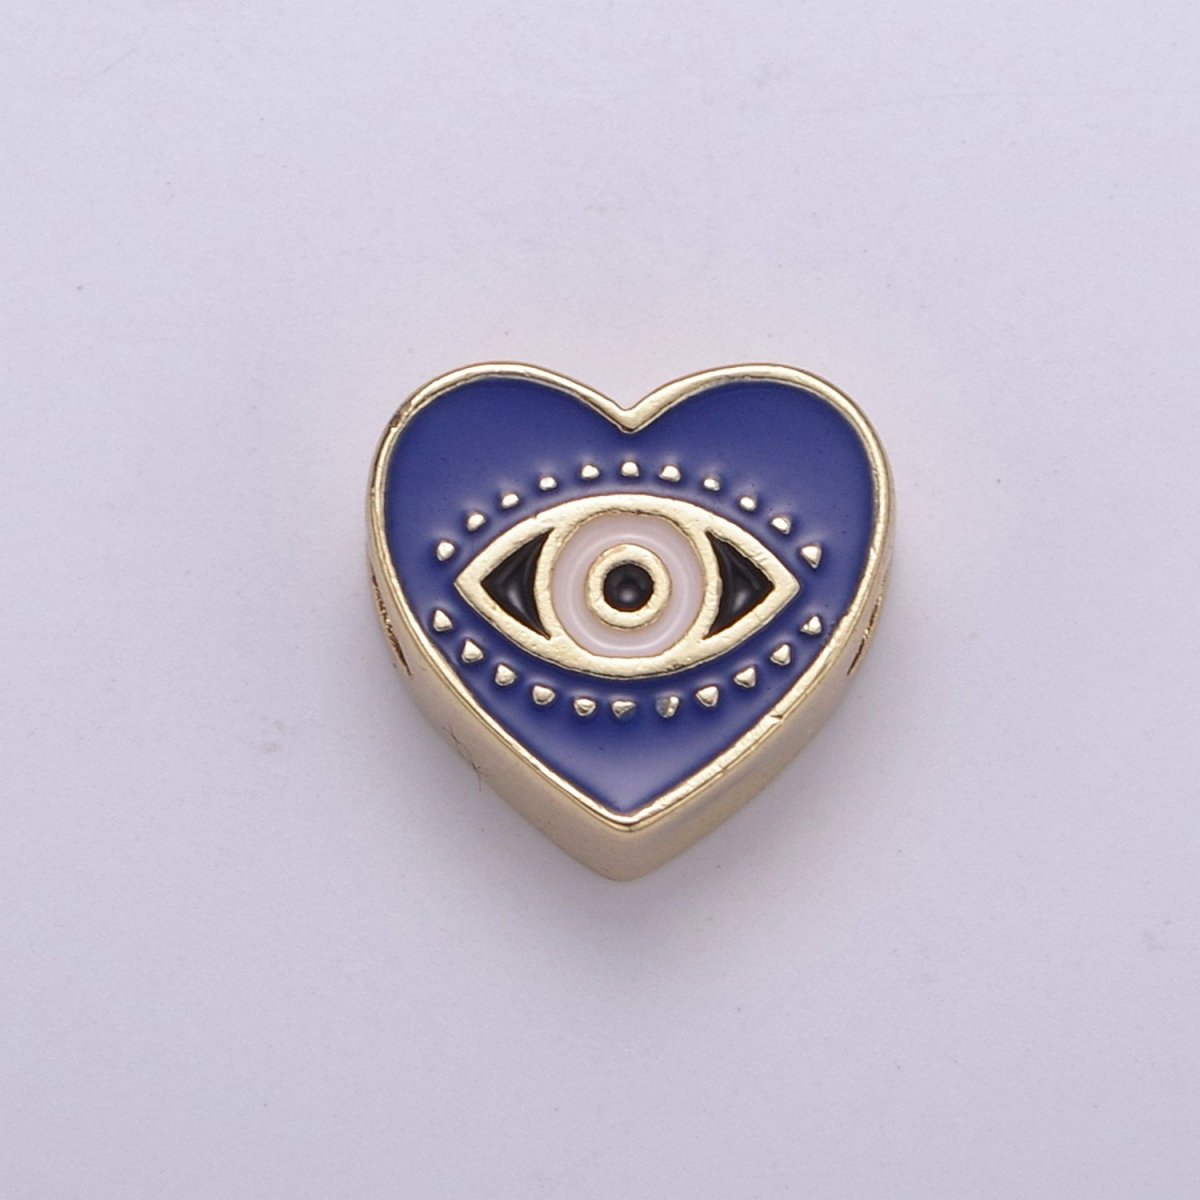 Evil Eye Bead, Heart Evil Eye, 10mm Evil Eye Beads, Side Drilled Black, Blue, Pink, Green, White Enamel B-750 to B-754 - DLUXCA